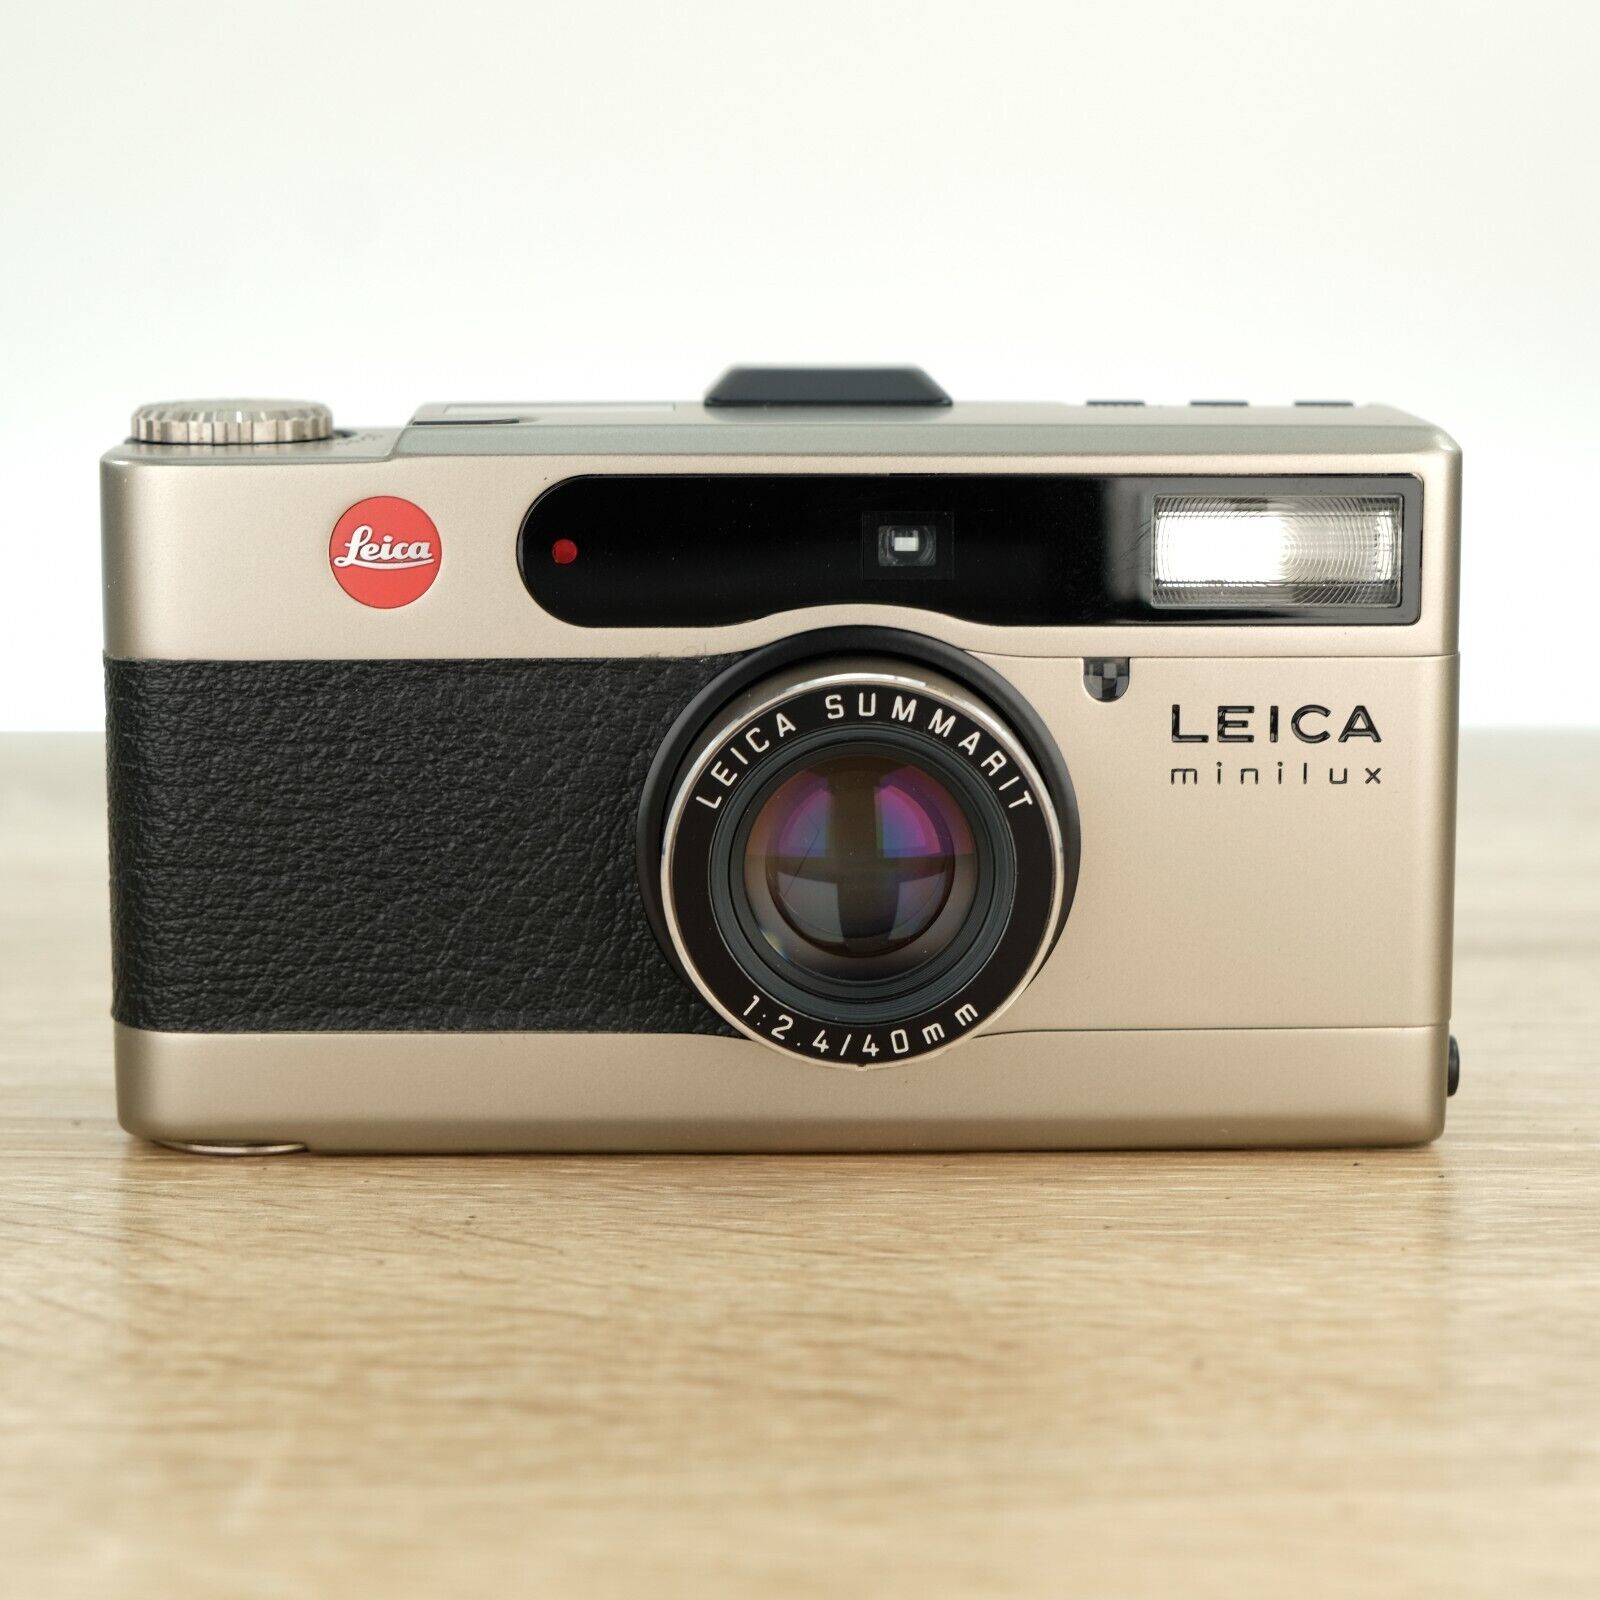 Leica Minilux Titanium 35mm Film Camera 40mm f/2.4 Summarit - Film Tested